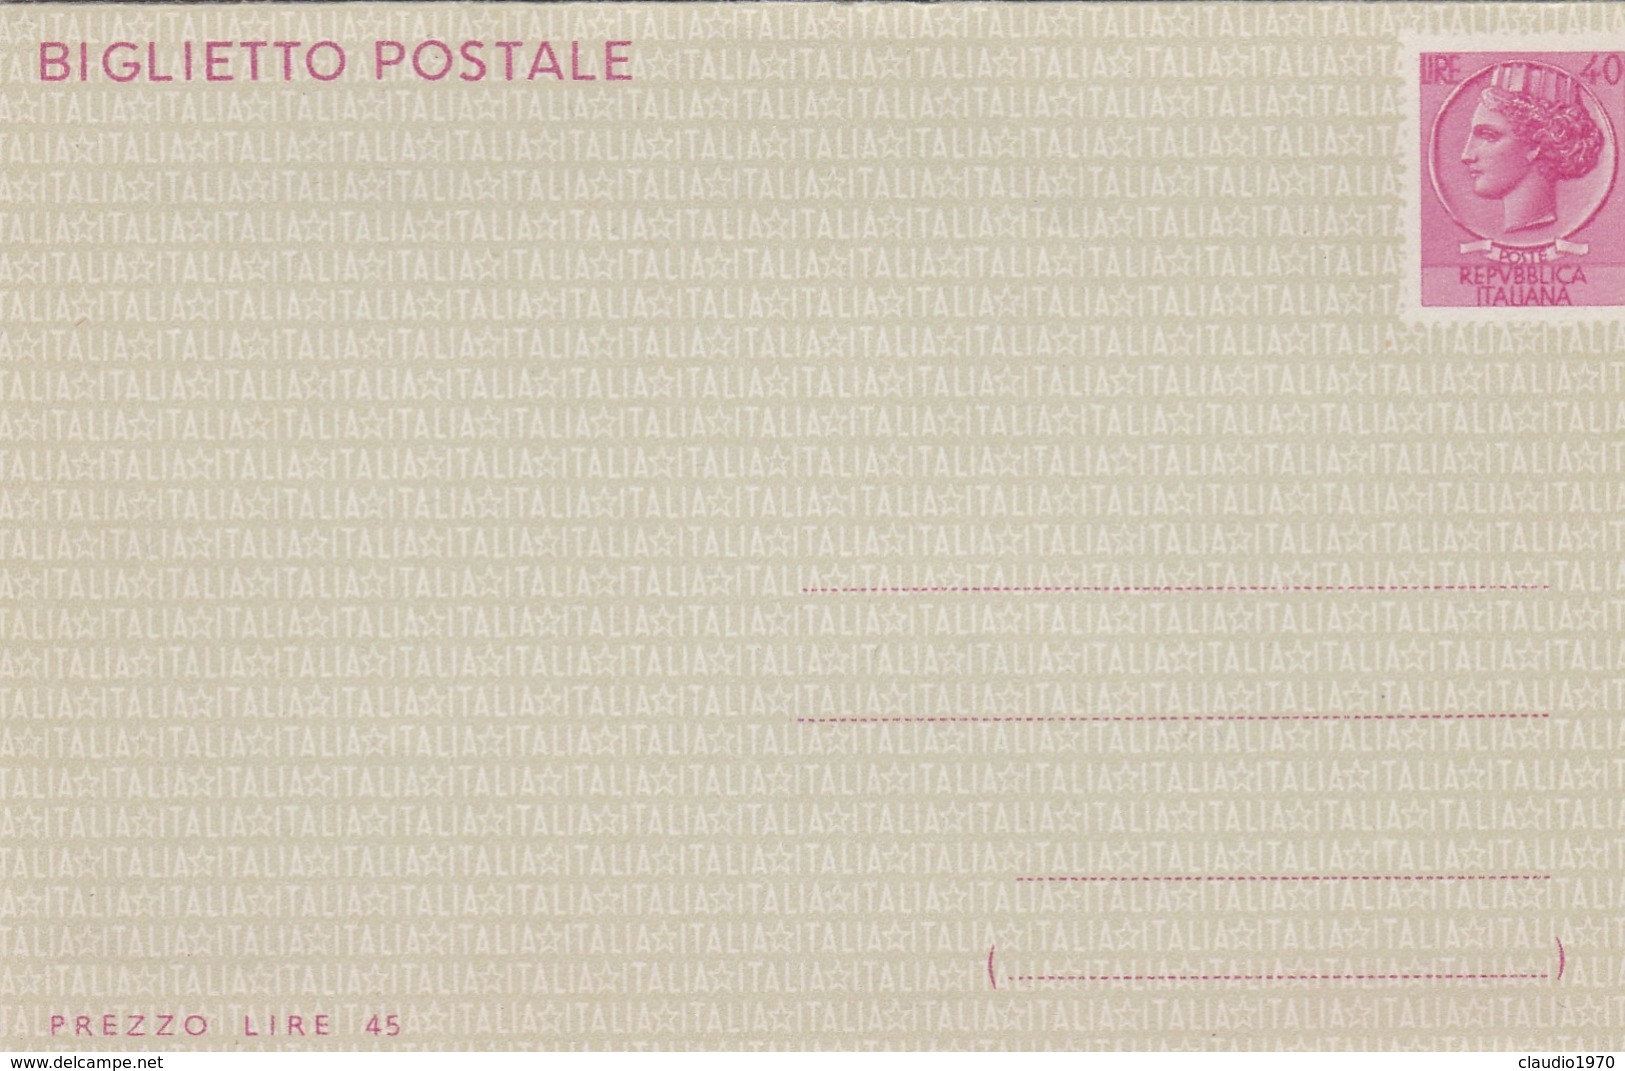 STORIA POSTALE - BIGLIETTO POSTALE L. 40 - NON VIAGGIATO - Interi Postali